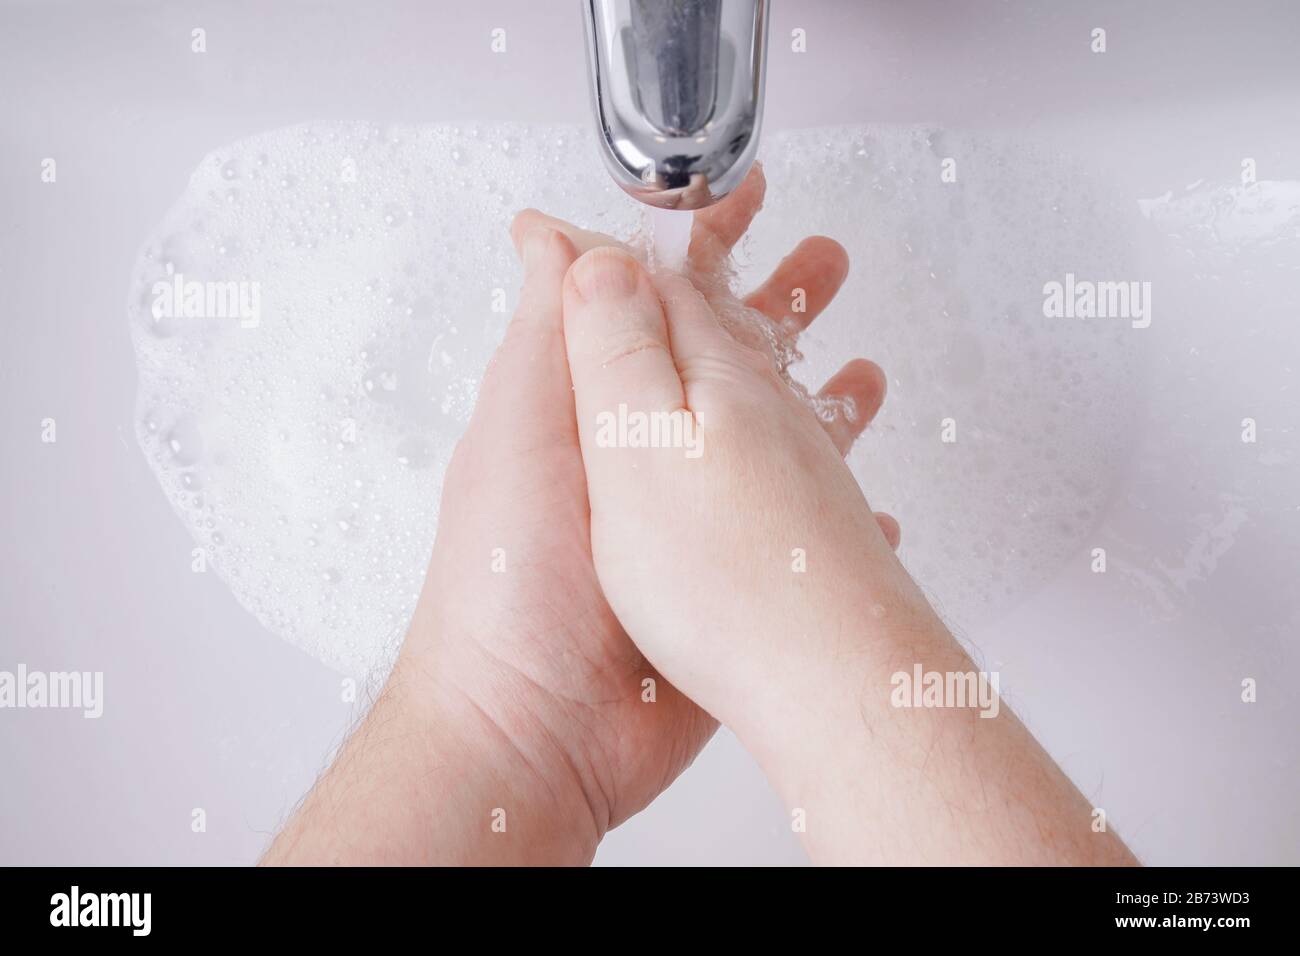 Händewaschen mit Seife und Wasser aus persönlicher Sicht - Hygienekonzept mit nicht erkennbarem männlichen Menschen und geringer Schärfentiefe Stockfoto